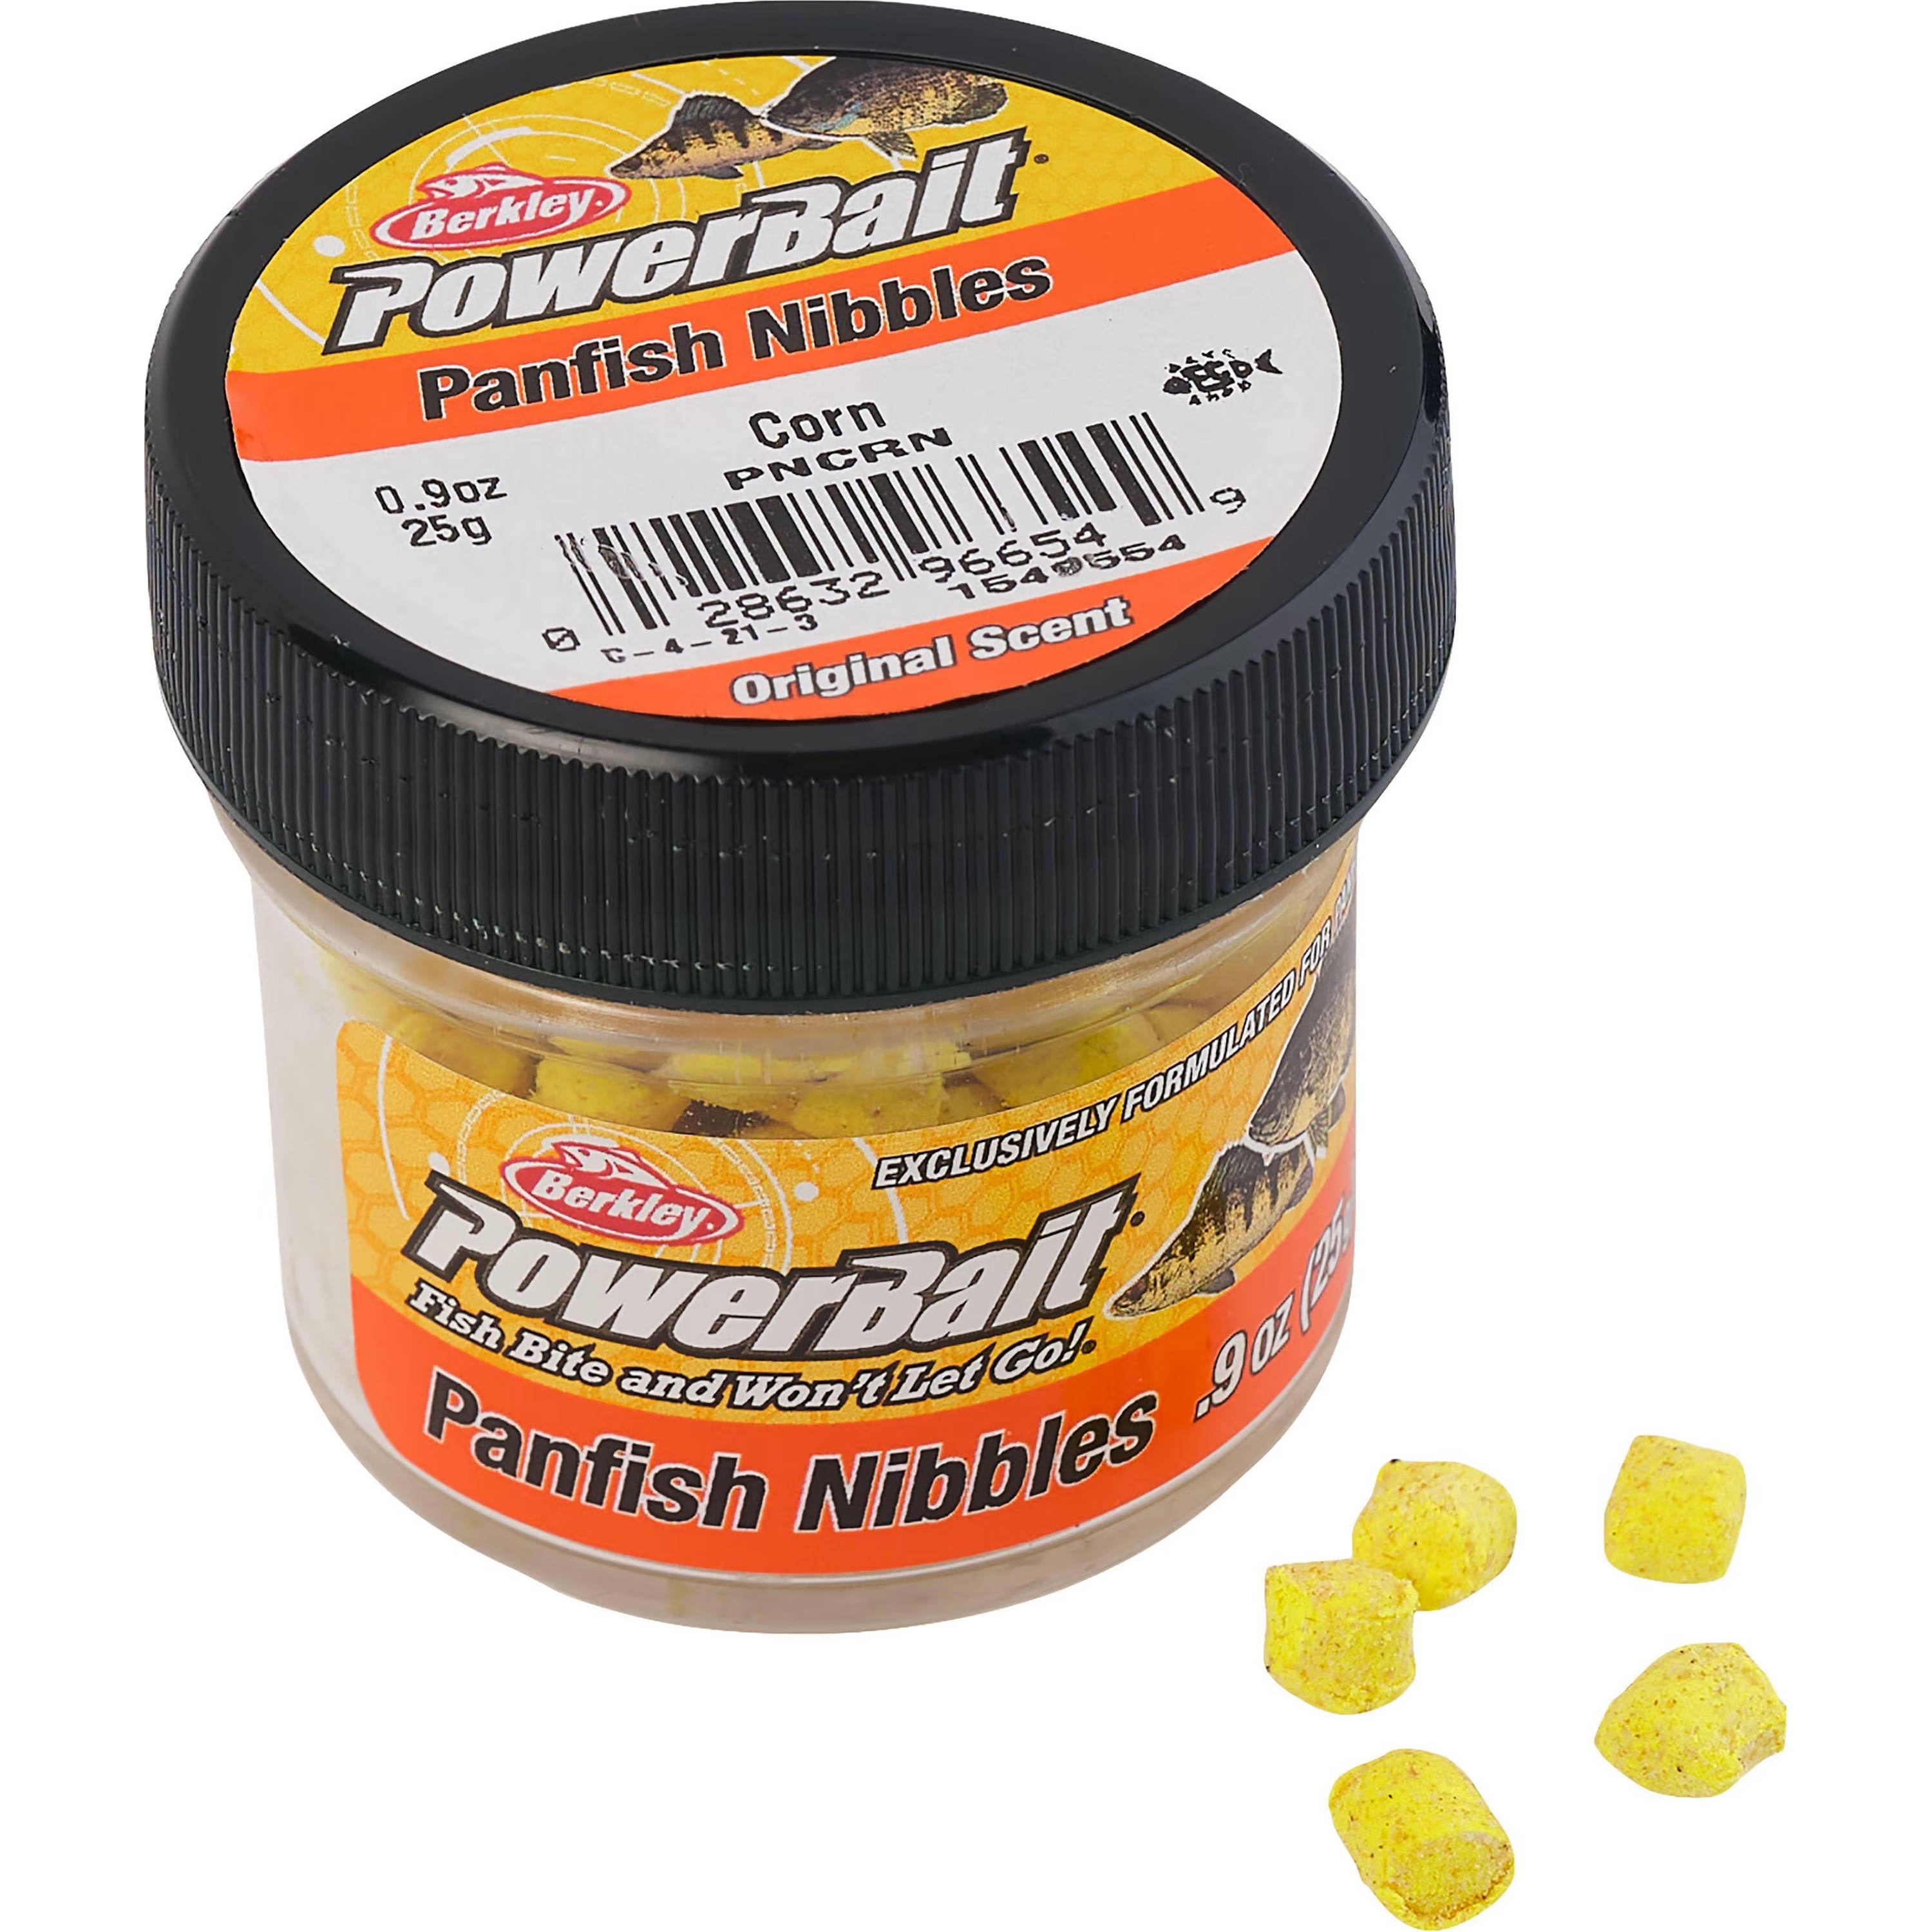 Berkley® PowerBait® Natural Glitter Trout Bait - Garlic